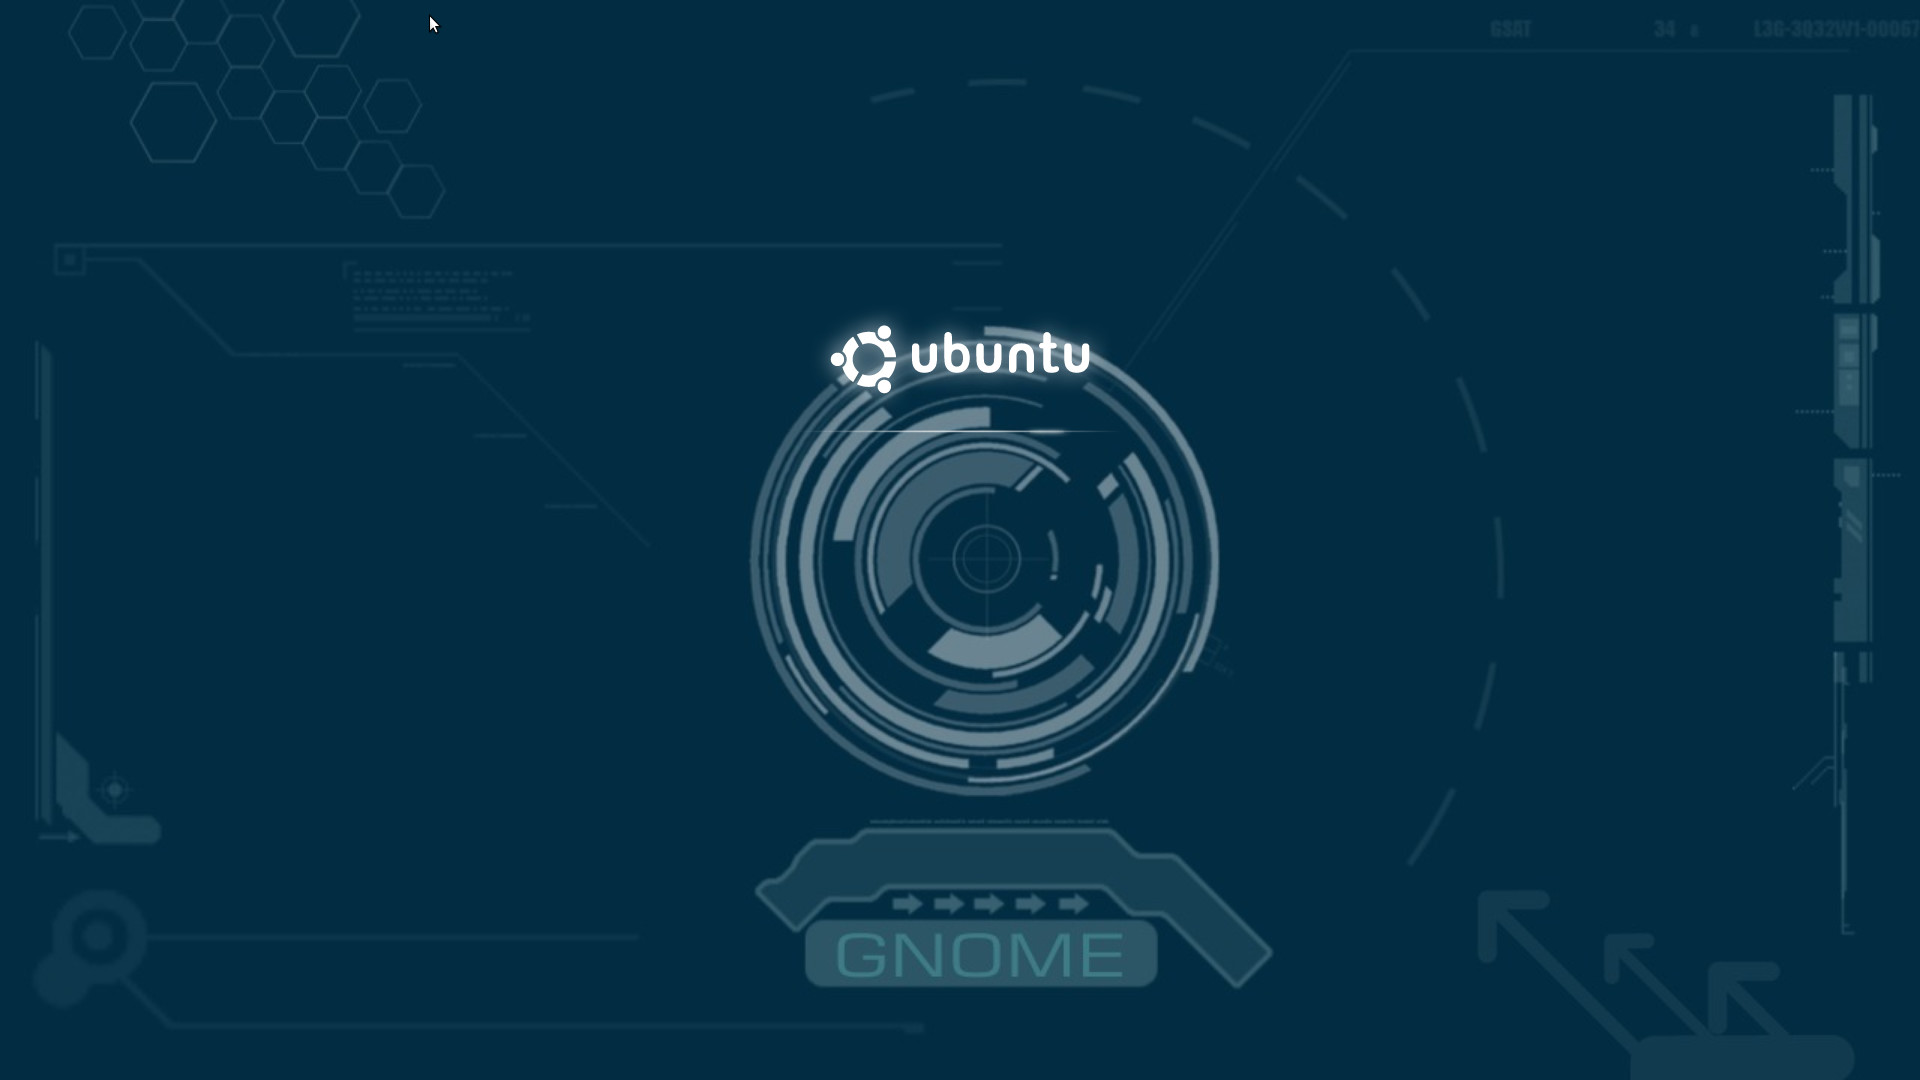 sfondo di ubuntu,testo,font,cerchio,grafica,disegno grafico